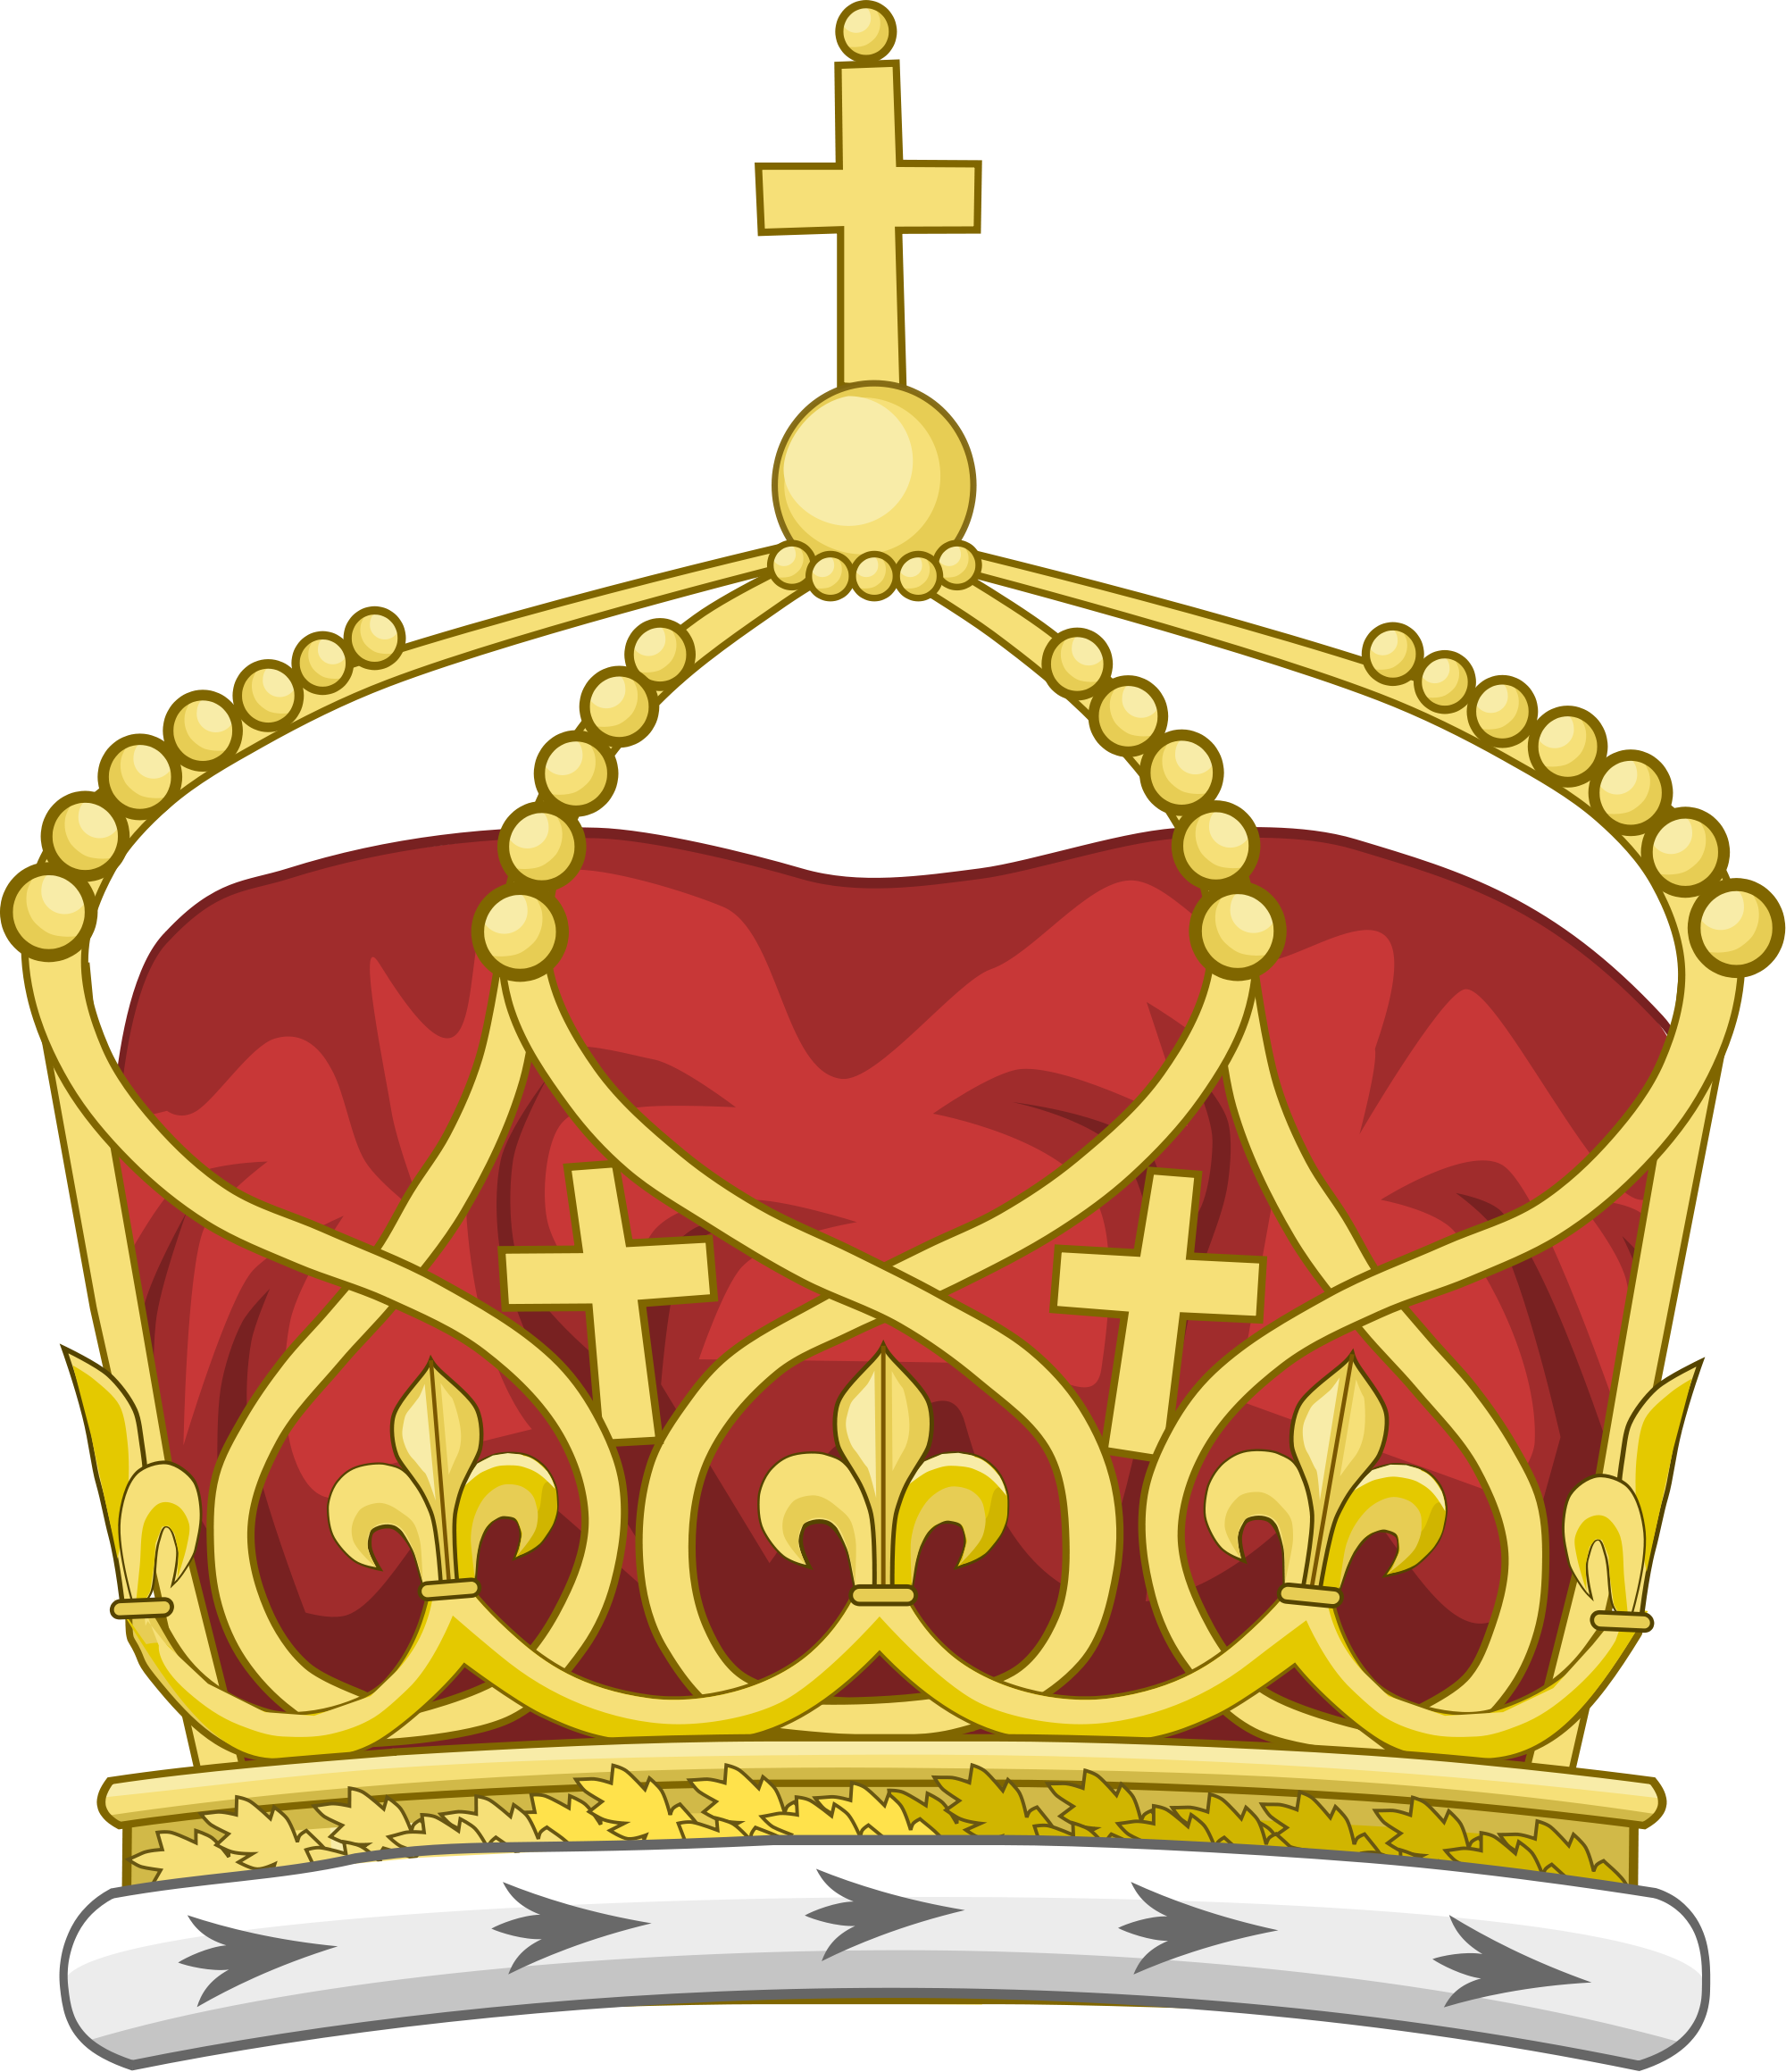 Open - Tongan King Crown (2000x2320)